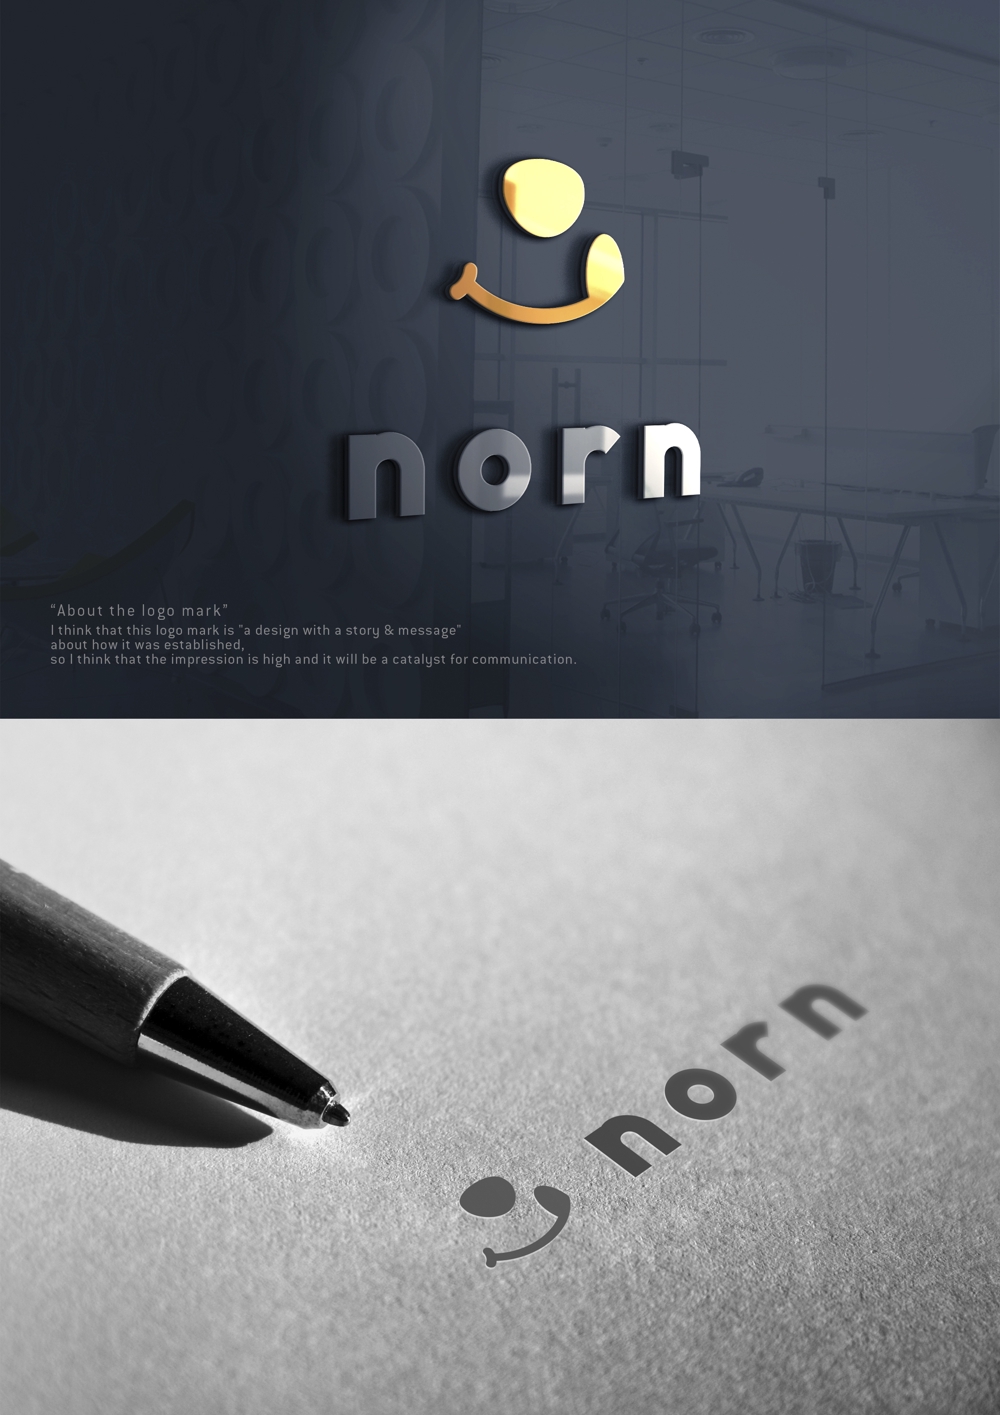 ペットフードショップサイト「norn」のロゴ